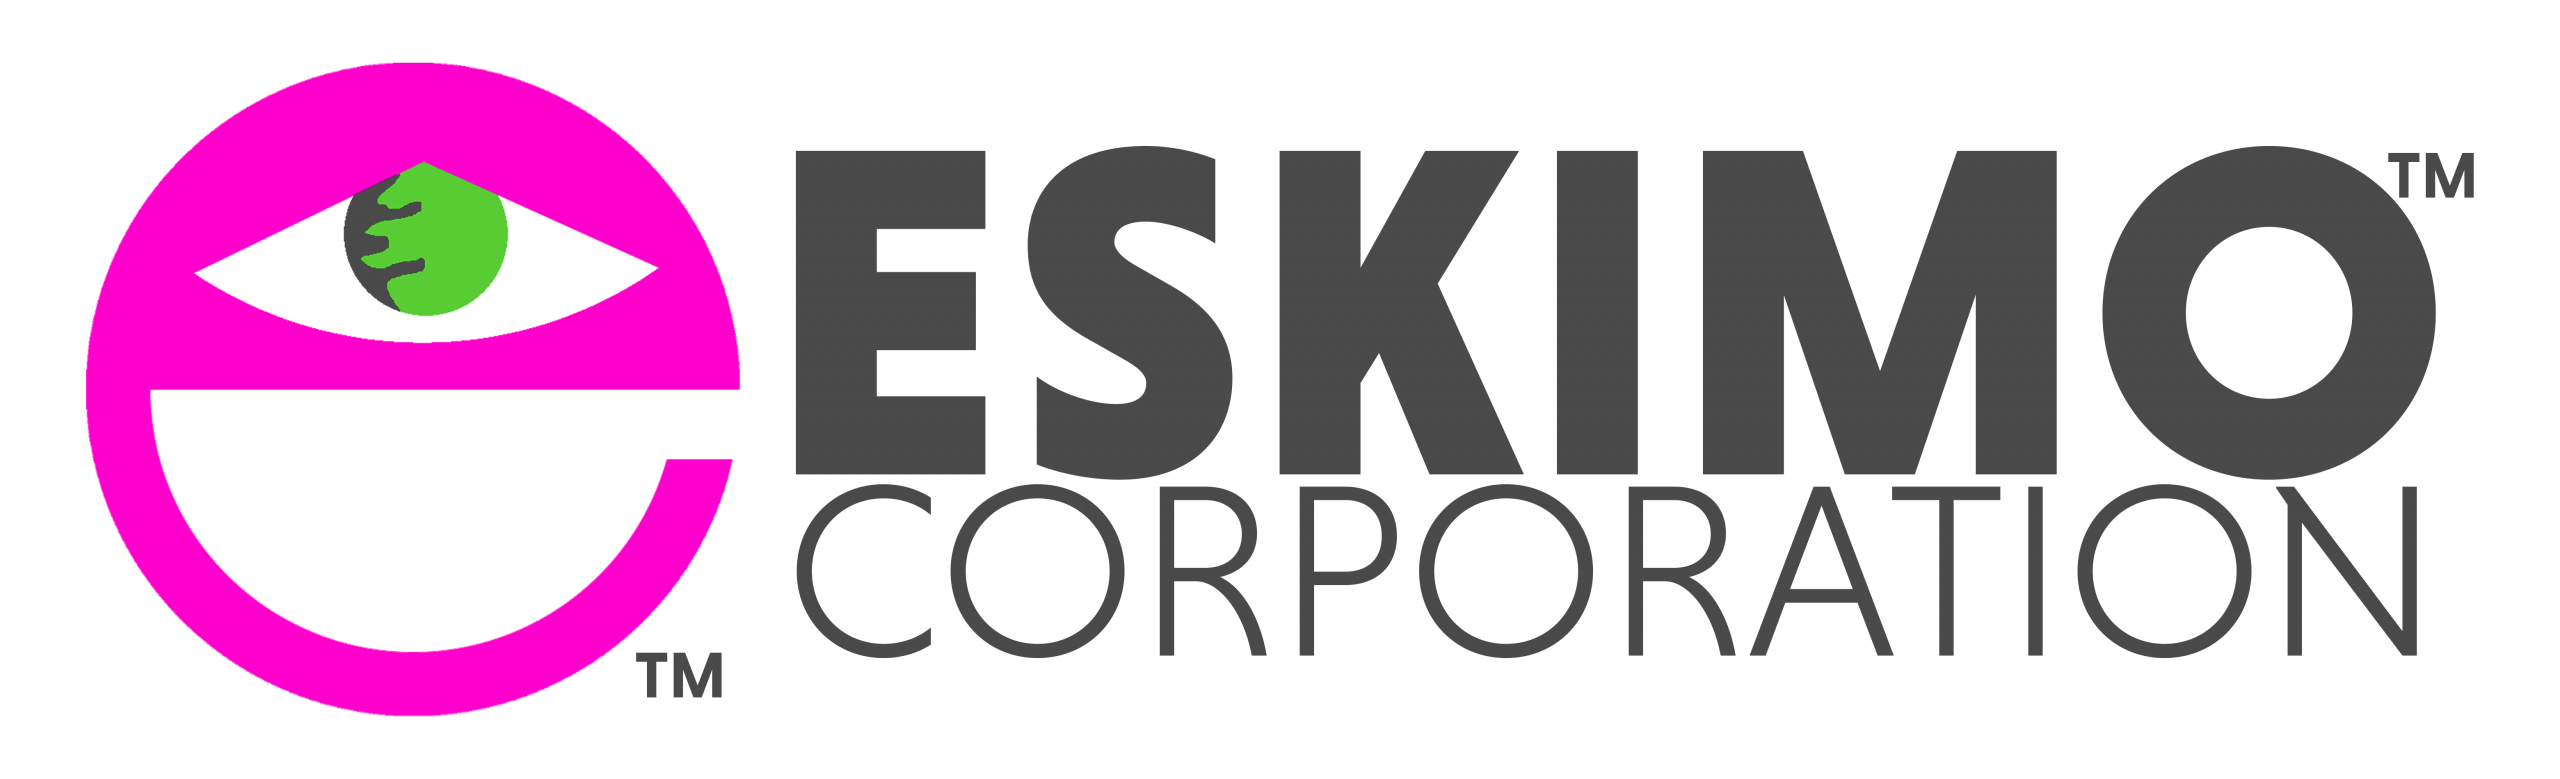 Eskimo Corporation